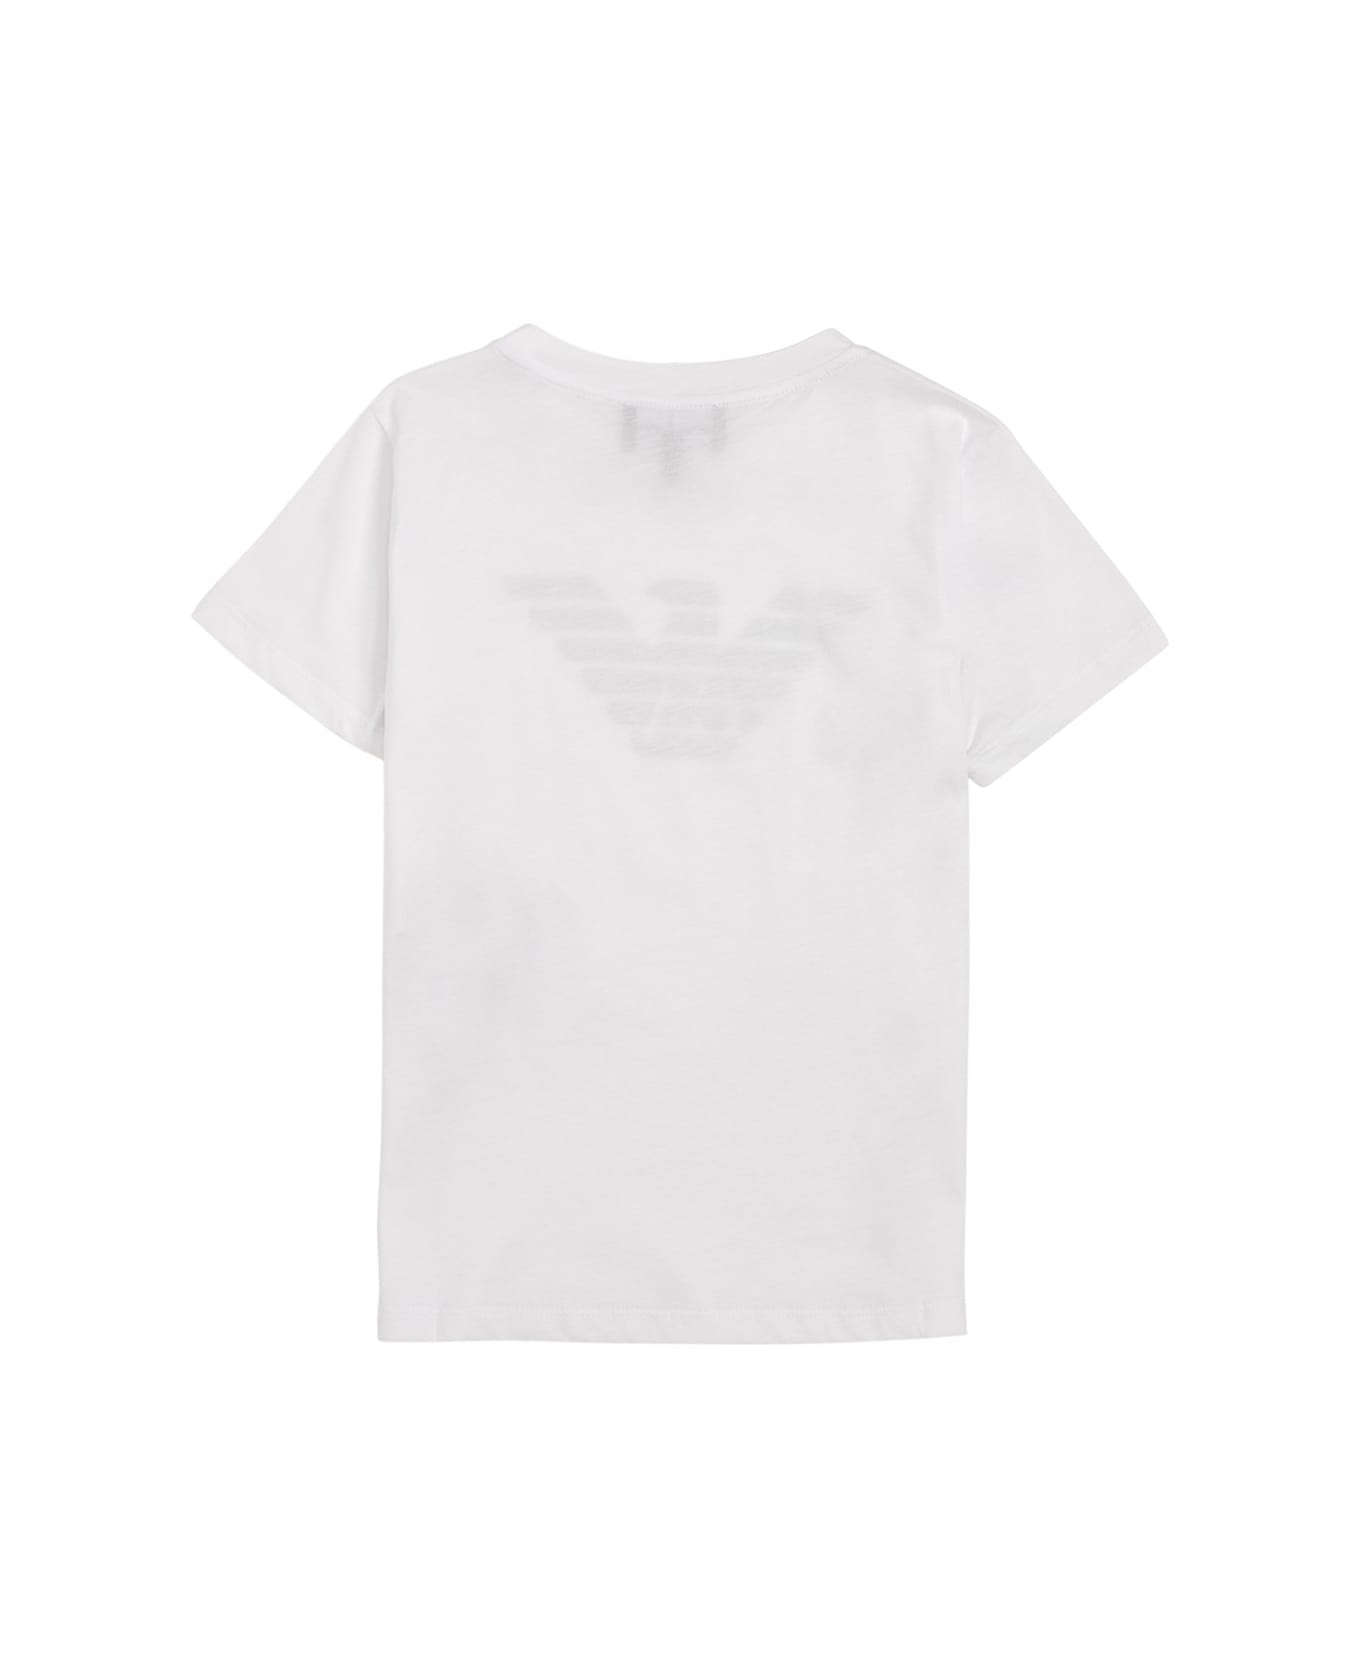 Emporio Armani White Cotton T-shirt With Logo Print - White